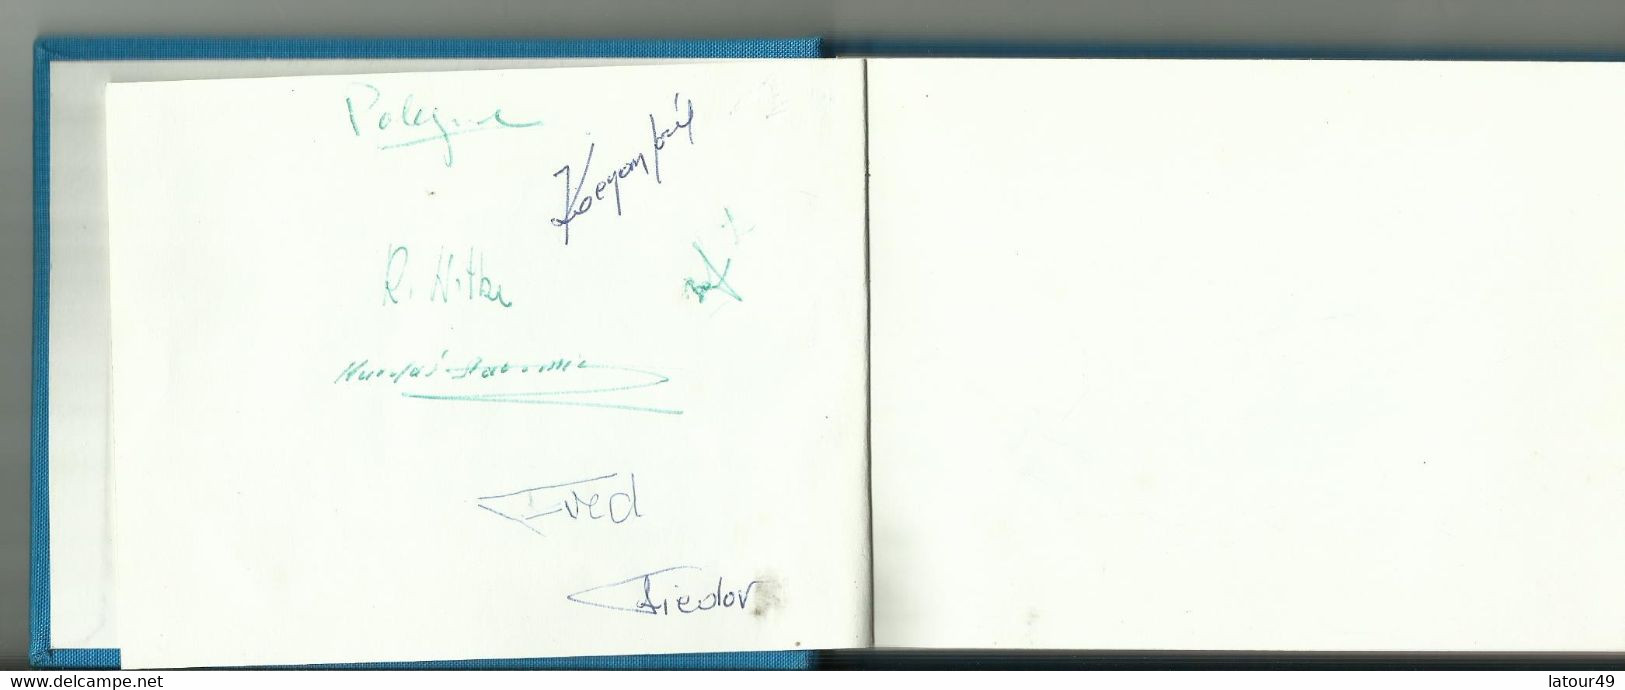 Jeux Olympique Grenoble1968  Autographes Pologne.jozet Kocjan Crwin Fredor Etc. Norvege Bjorn Wirkola Porte Drapeau Etc - Autographes